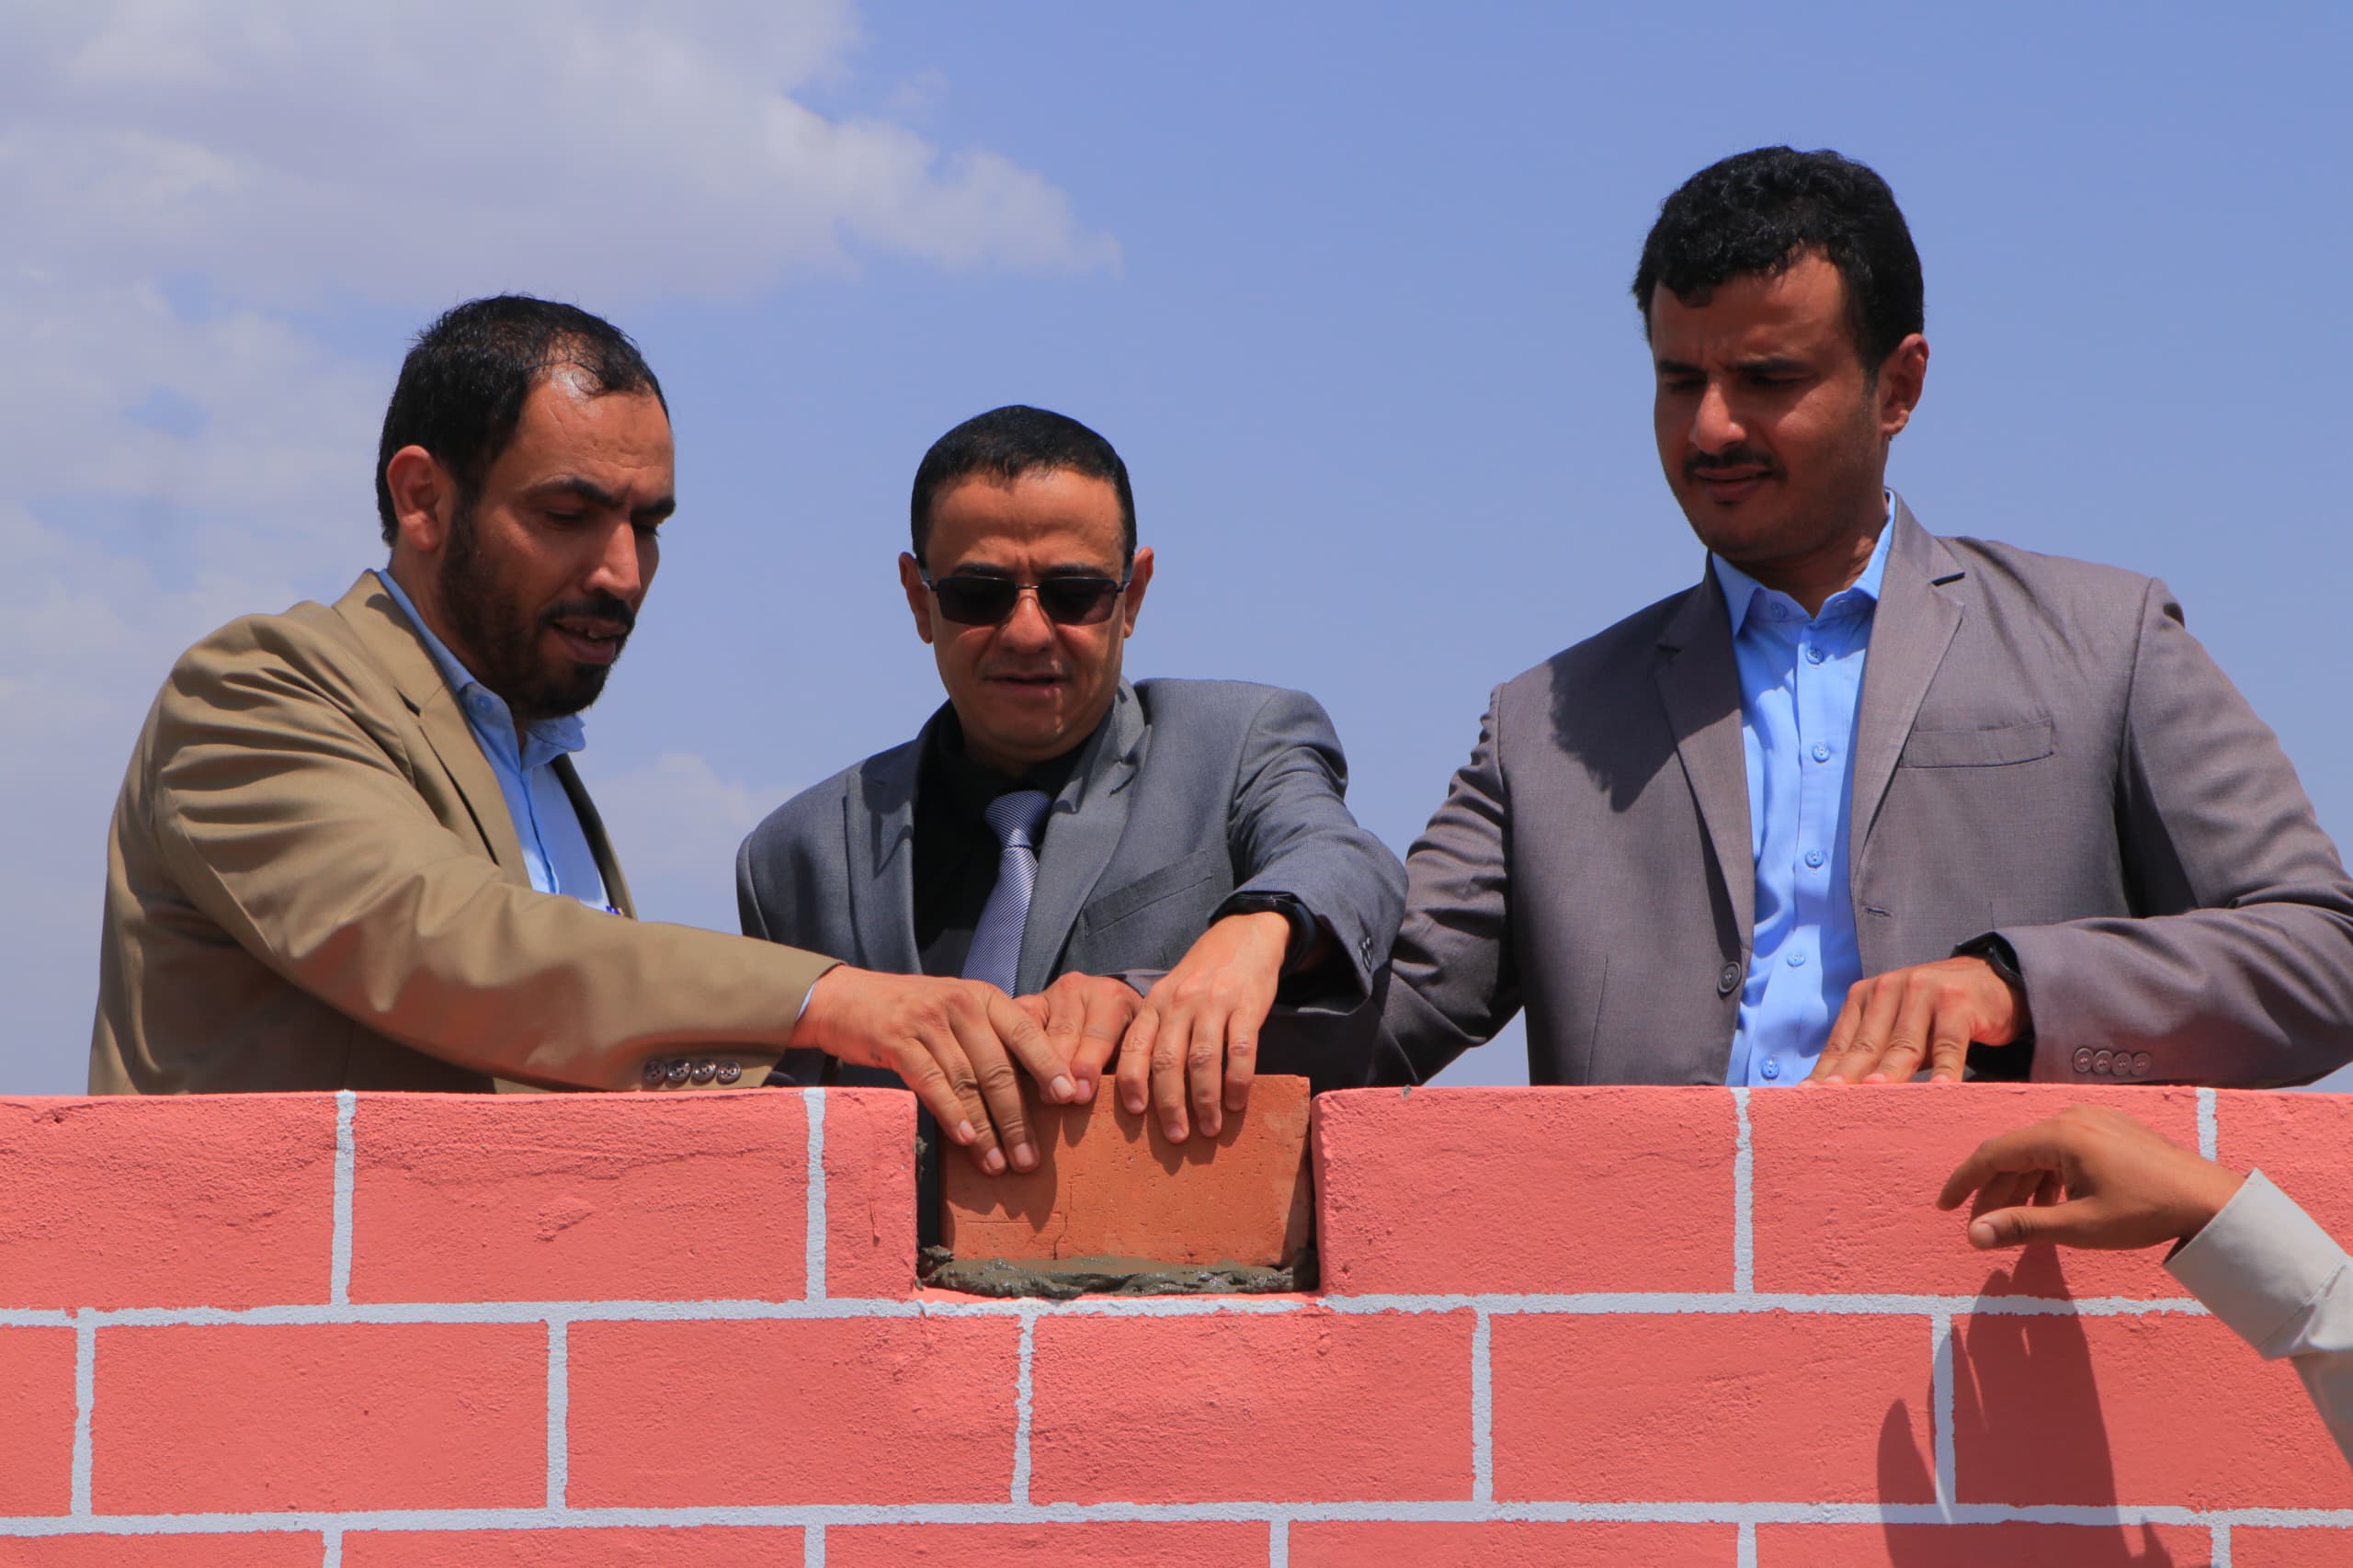 مأرب: وضع حجر اساس لانشاء قرية سكنية للنازحين تظم 55 وحدة سكنية بتمويل كويتي